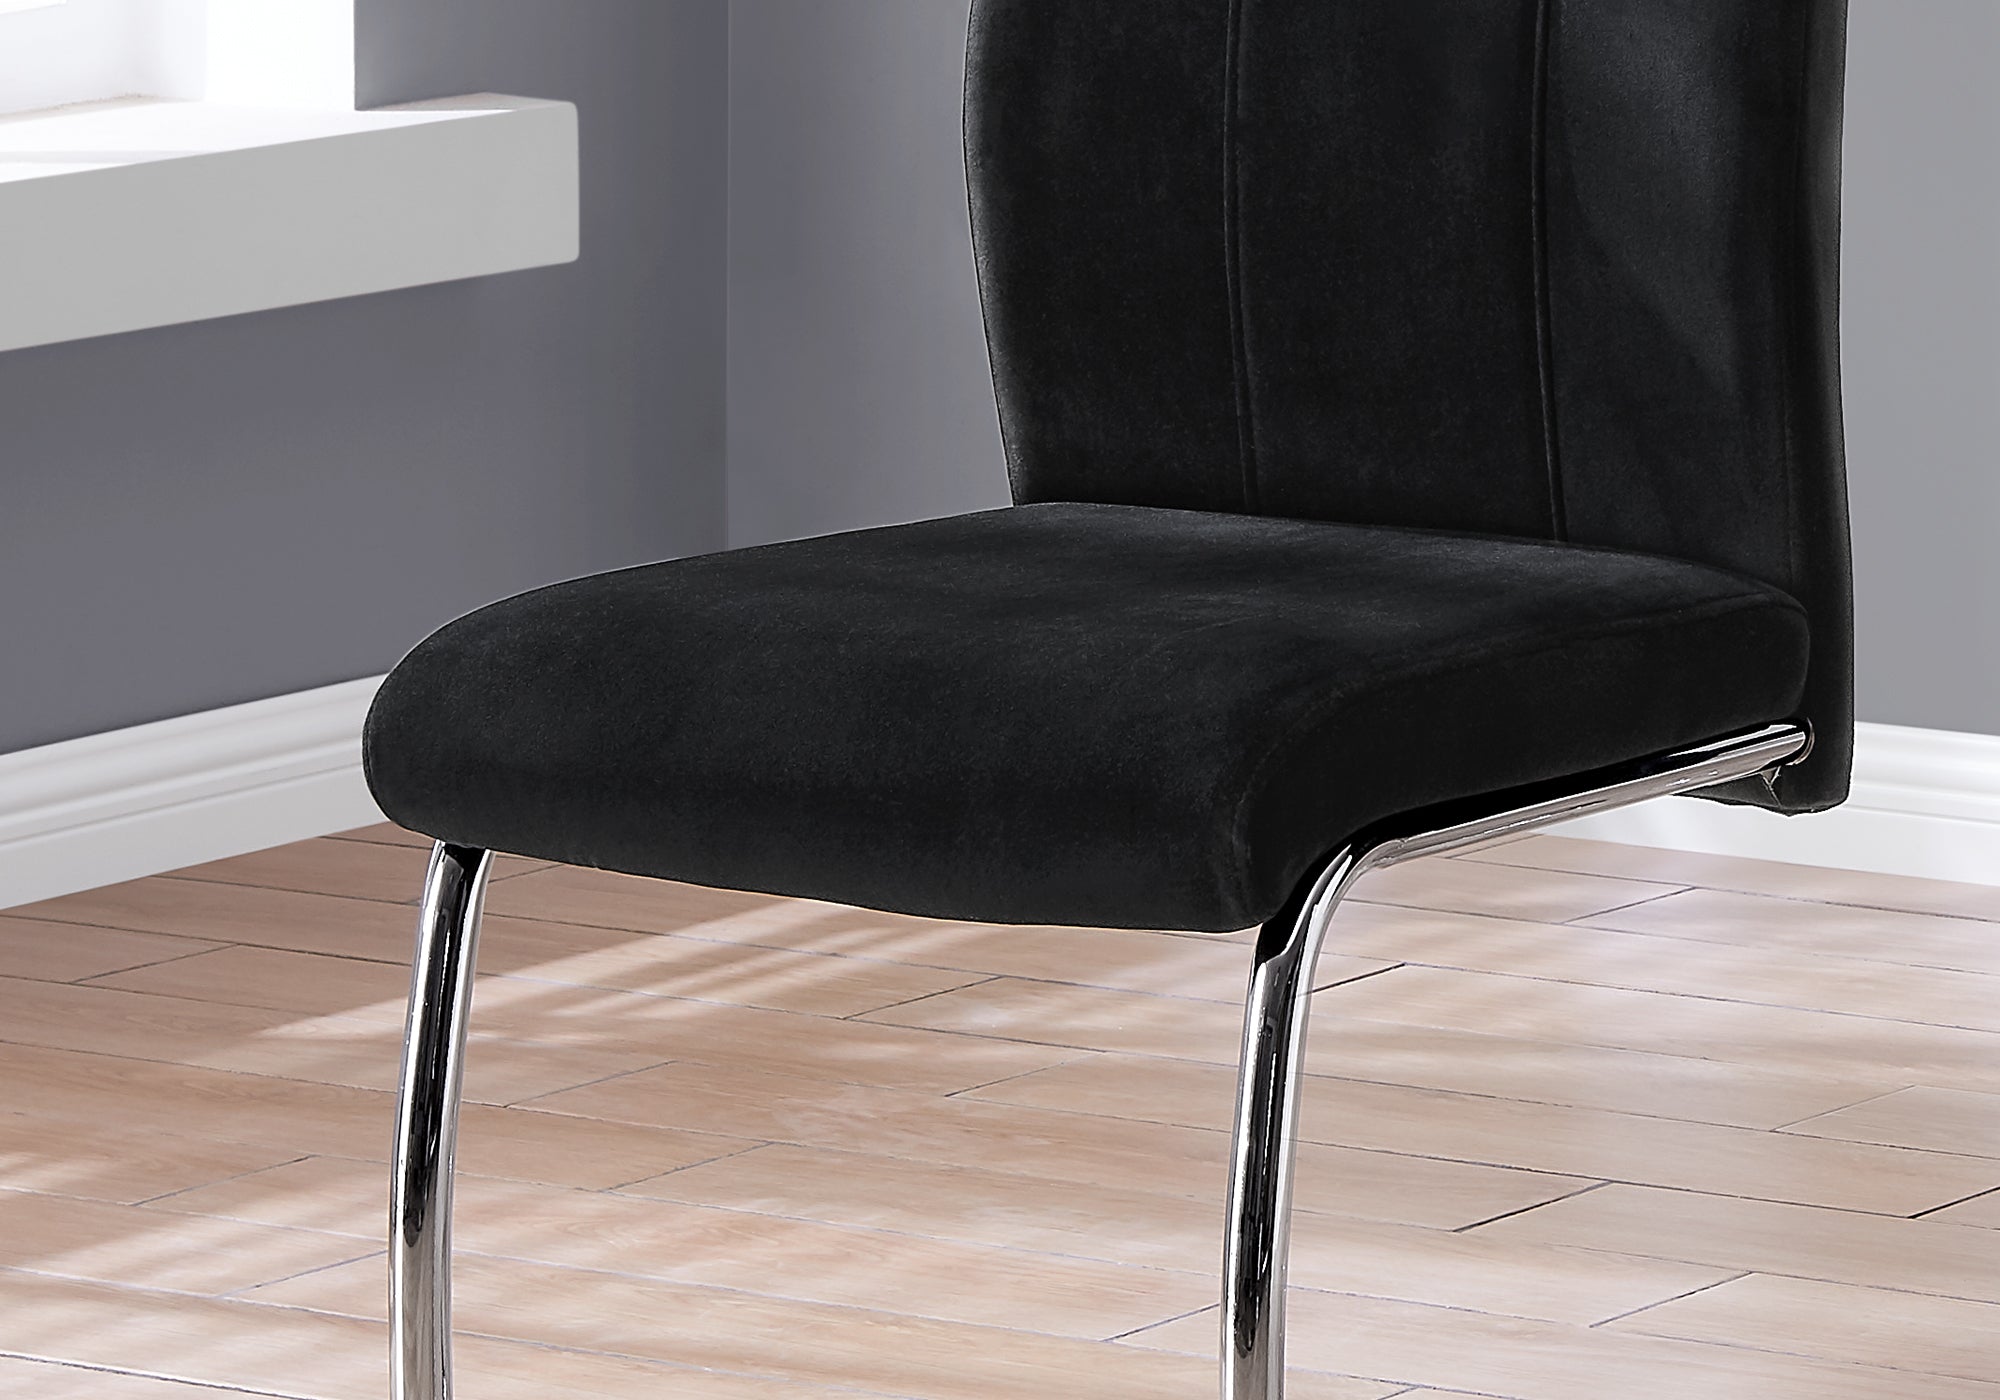 Dining Chair - 2Pcs / 39H / Black Velvet / Chrome